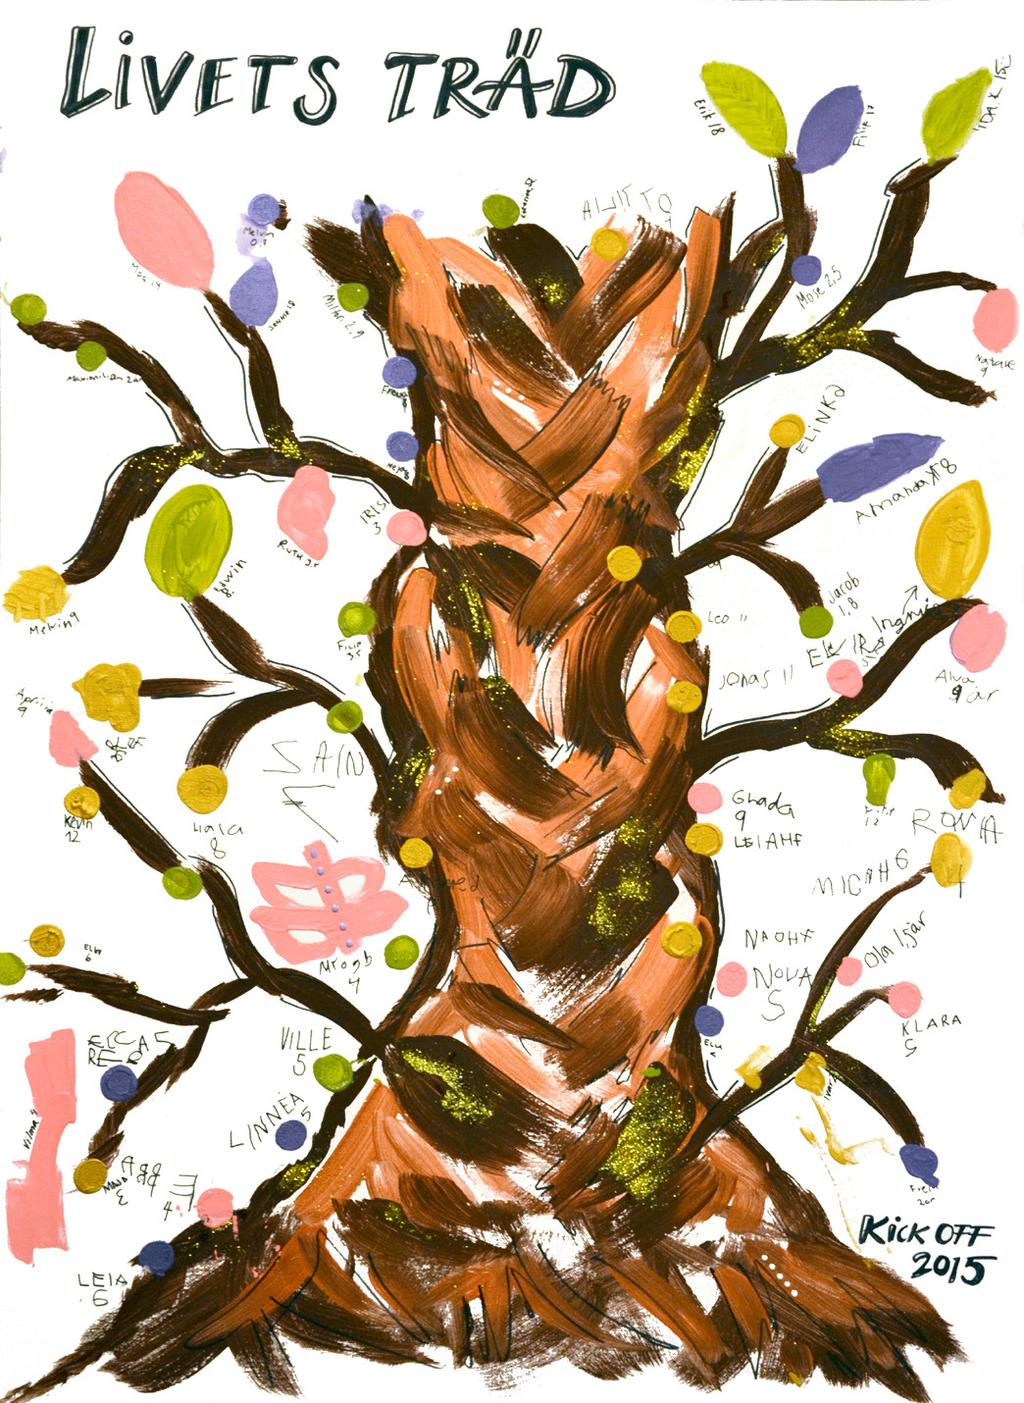 foto : sandra mat tsson Den 13 september 2015 anordnade pastoratet en "Kick-off" inför höstens verksamhetsuppstarter. På en station fick barnen skapa en tavla, "Livets träd".